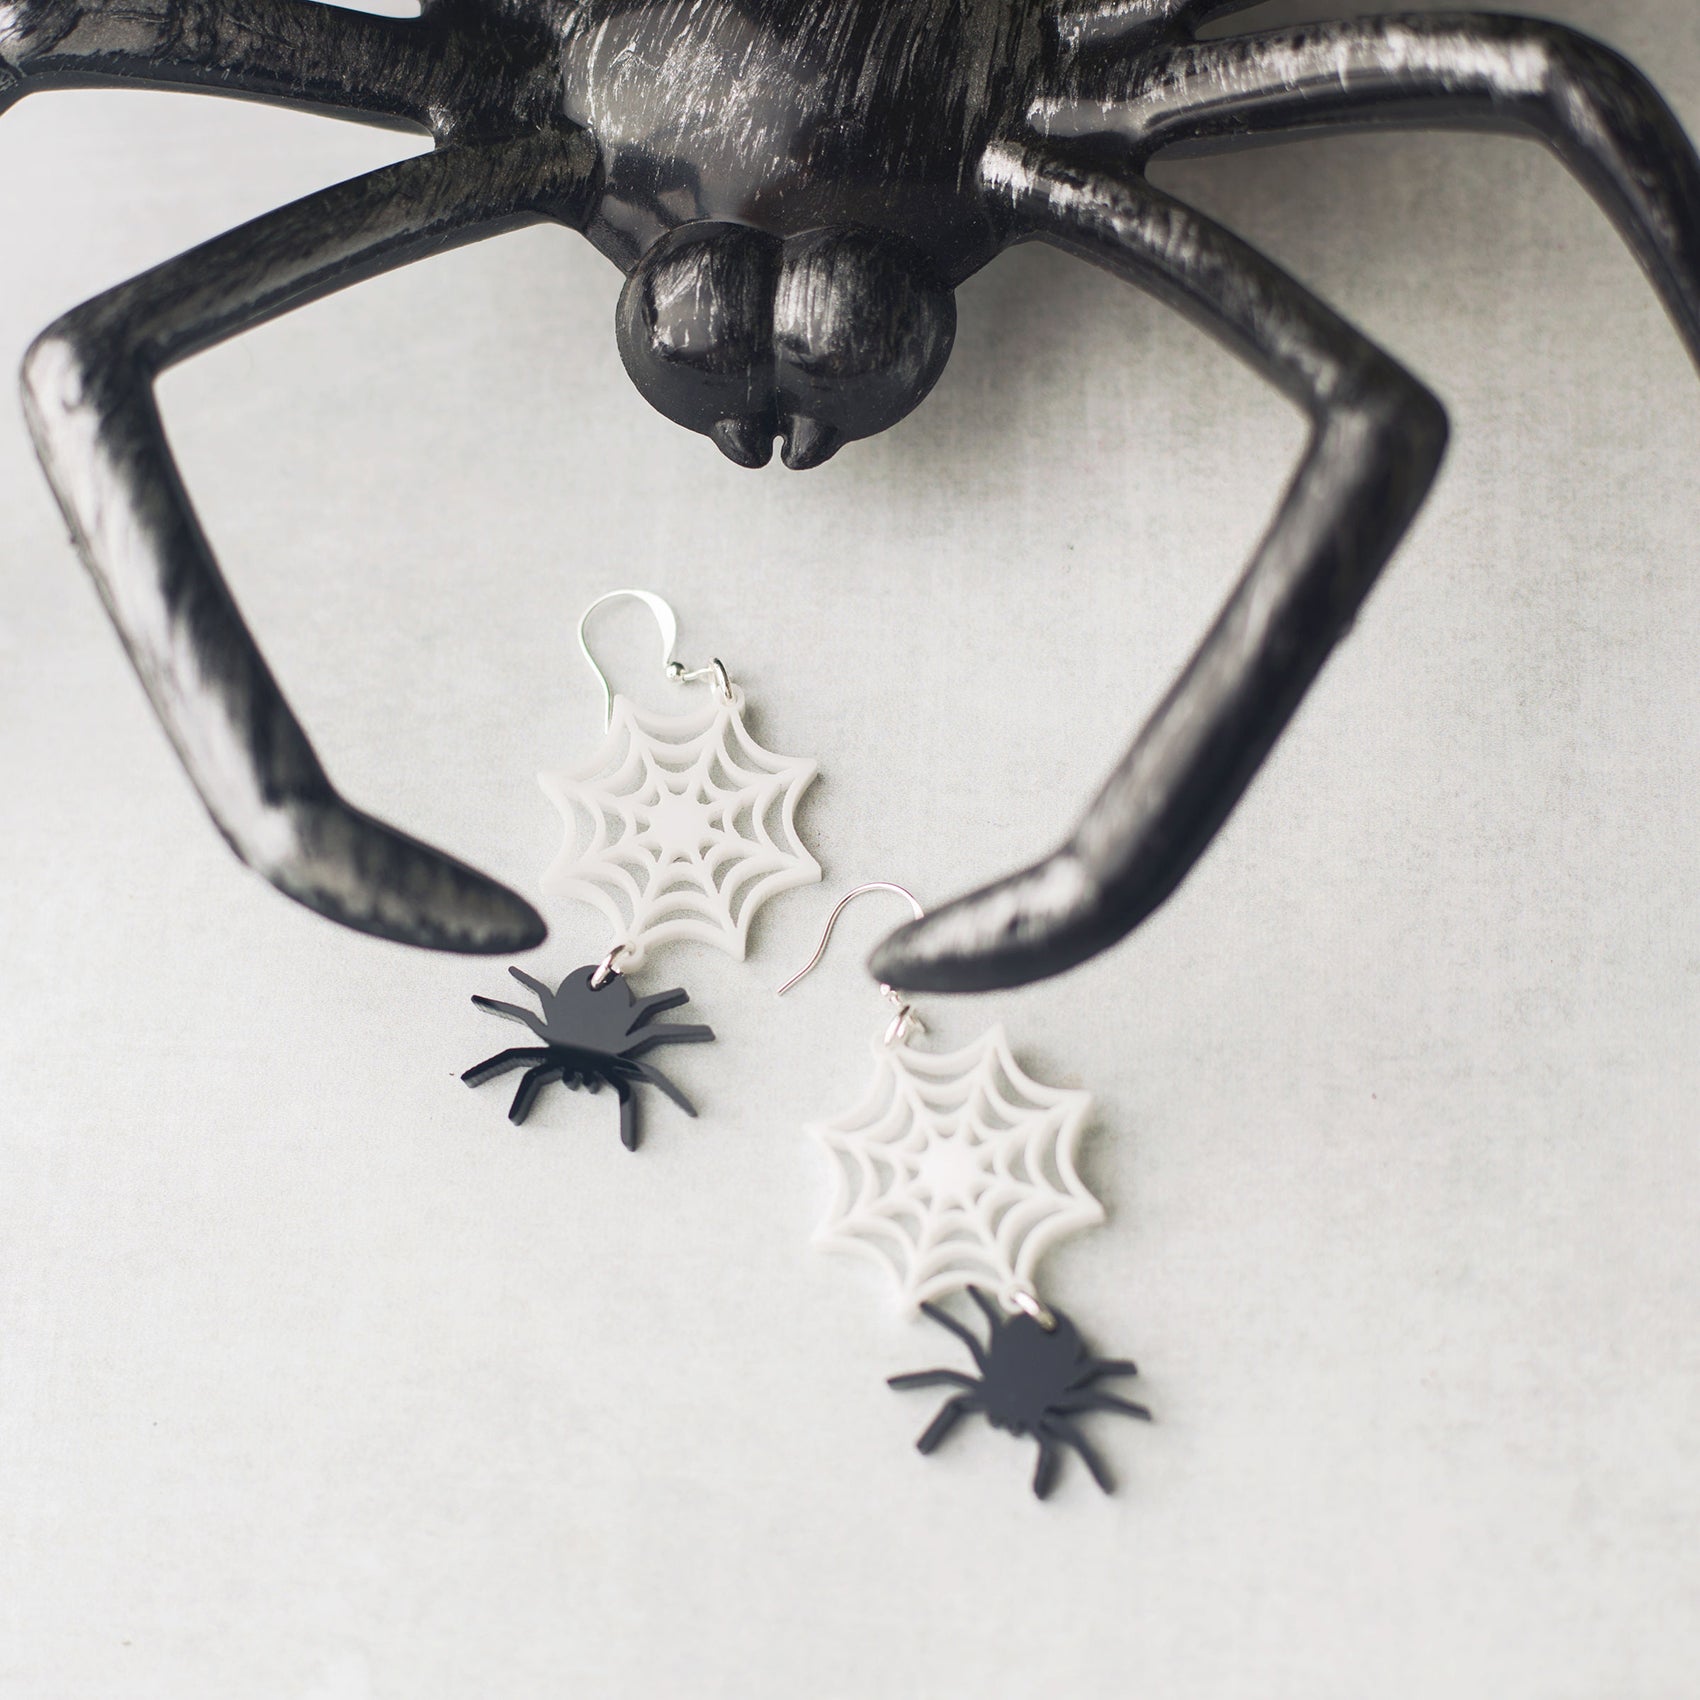 Dangly Spiderweb Earrings